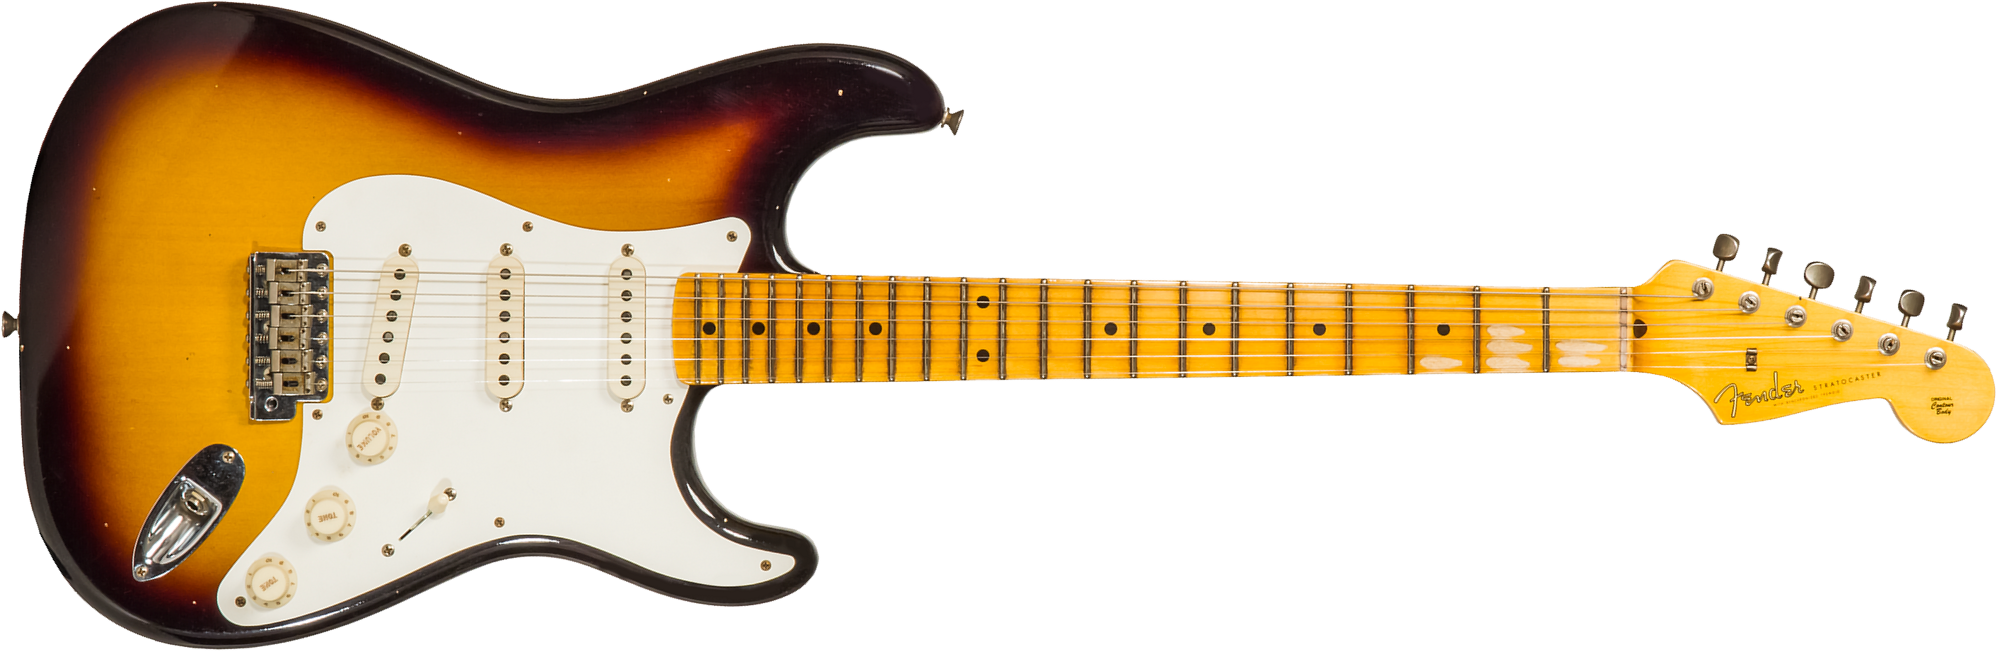 Fender Custom Shop Strat 1956 3s Trem Mn #cz571884 - Journeyman Relic Aged 2-color Sunburst - Guitare Électrique Forme Str - Main picture